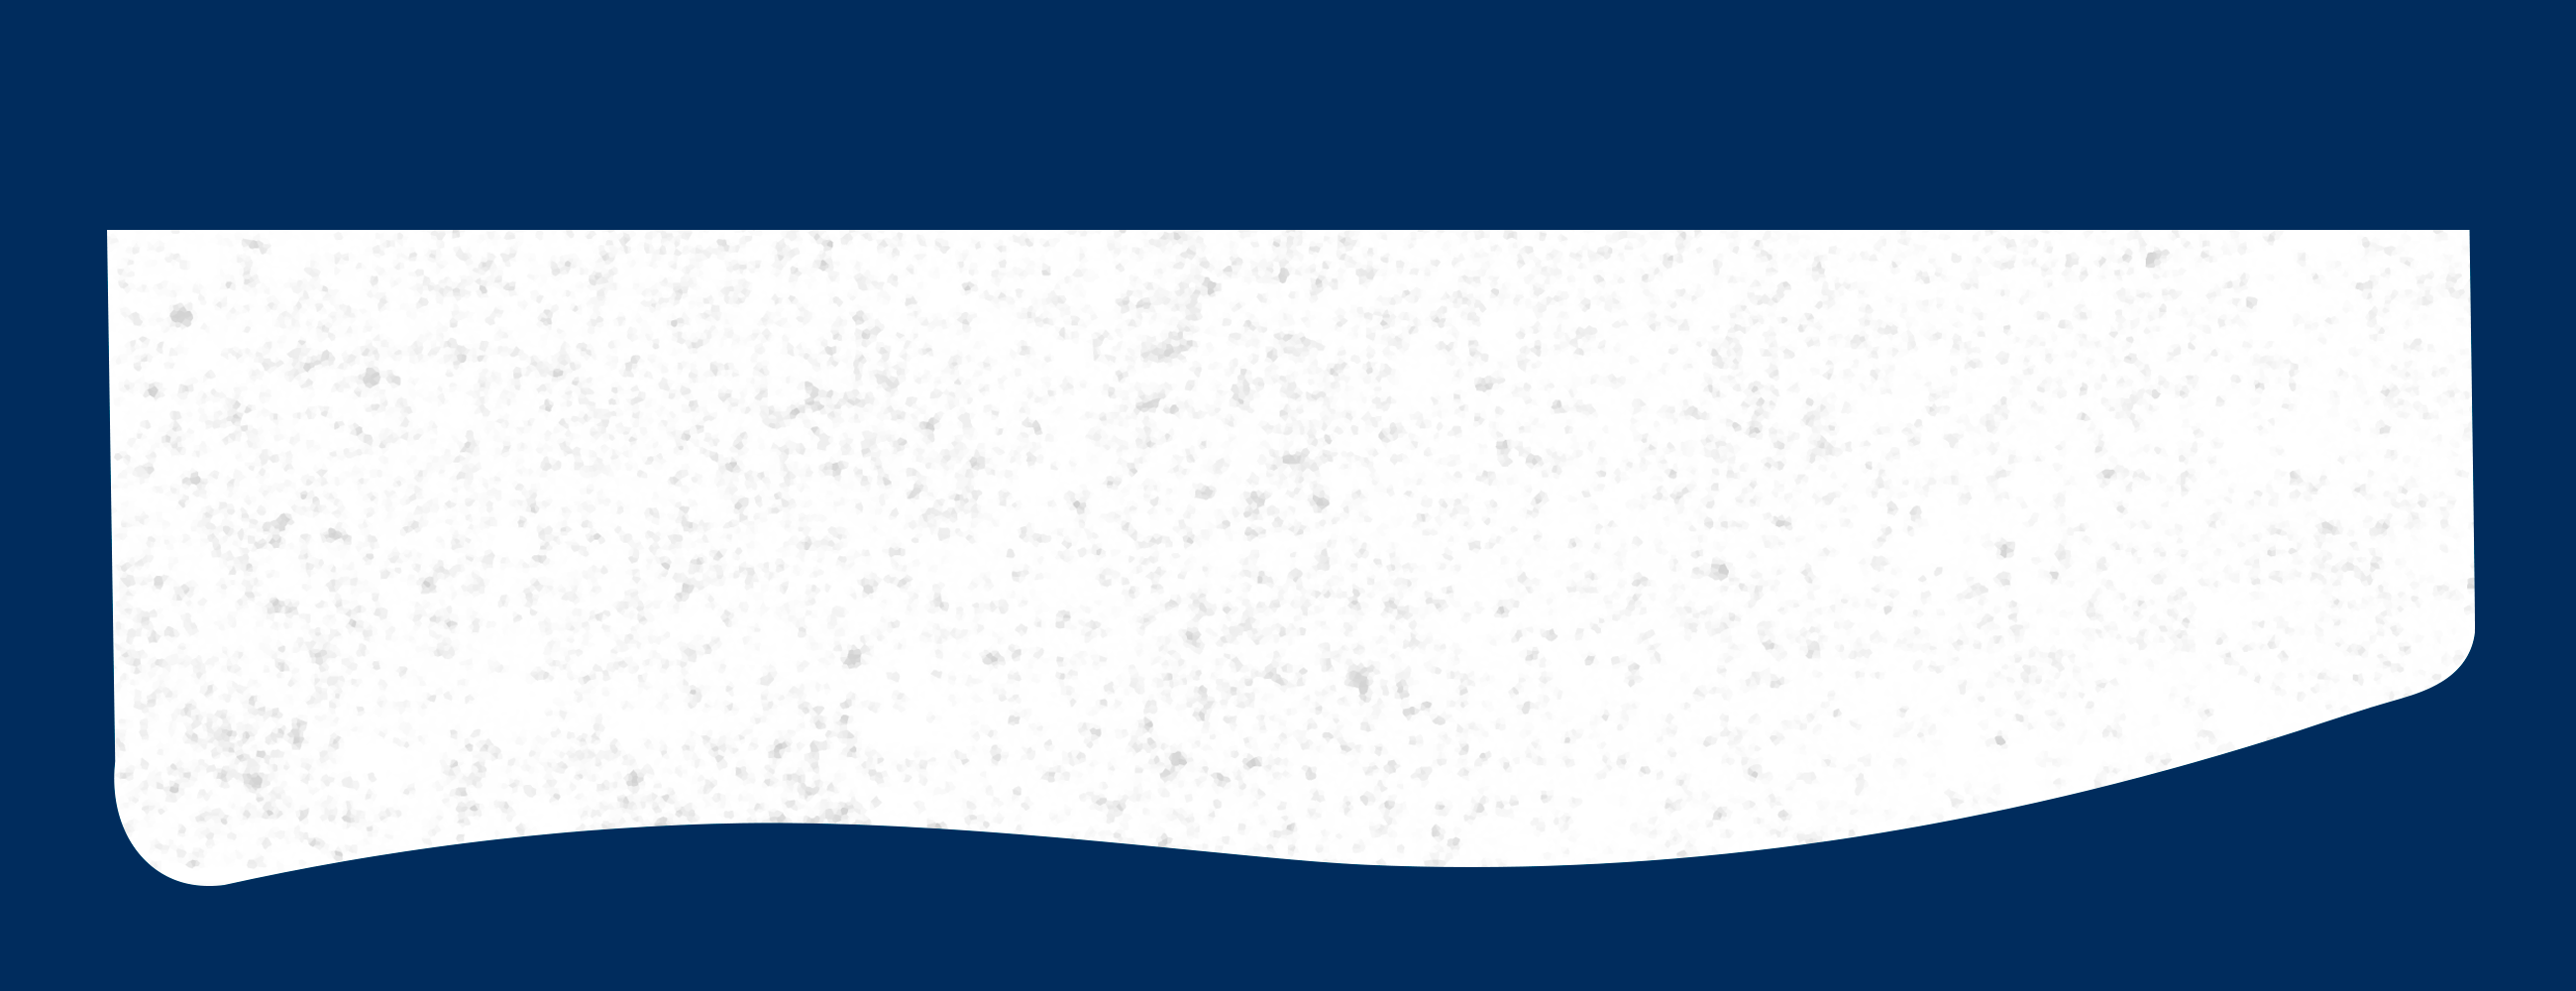 Banner com fundo azul e branco texturizado.